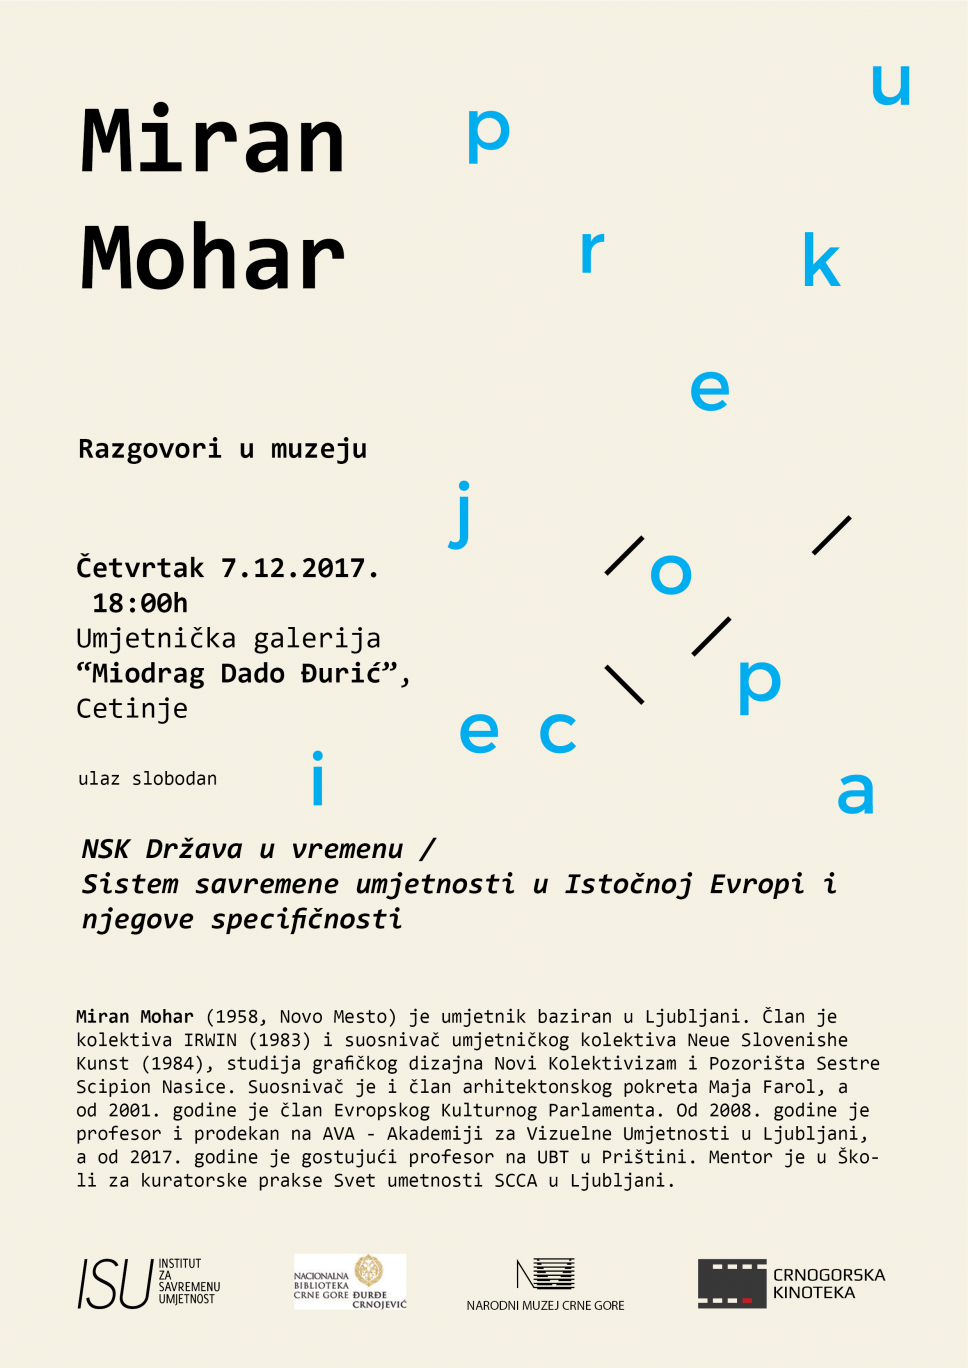 Program Prokupacije /Razgovori u muzeju/ Miran Mohar